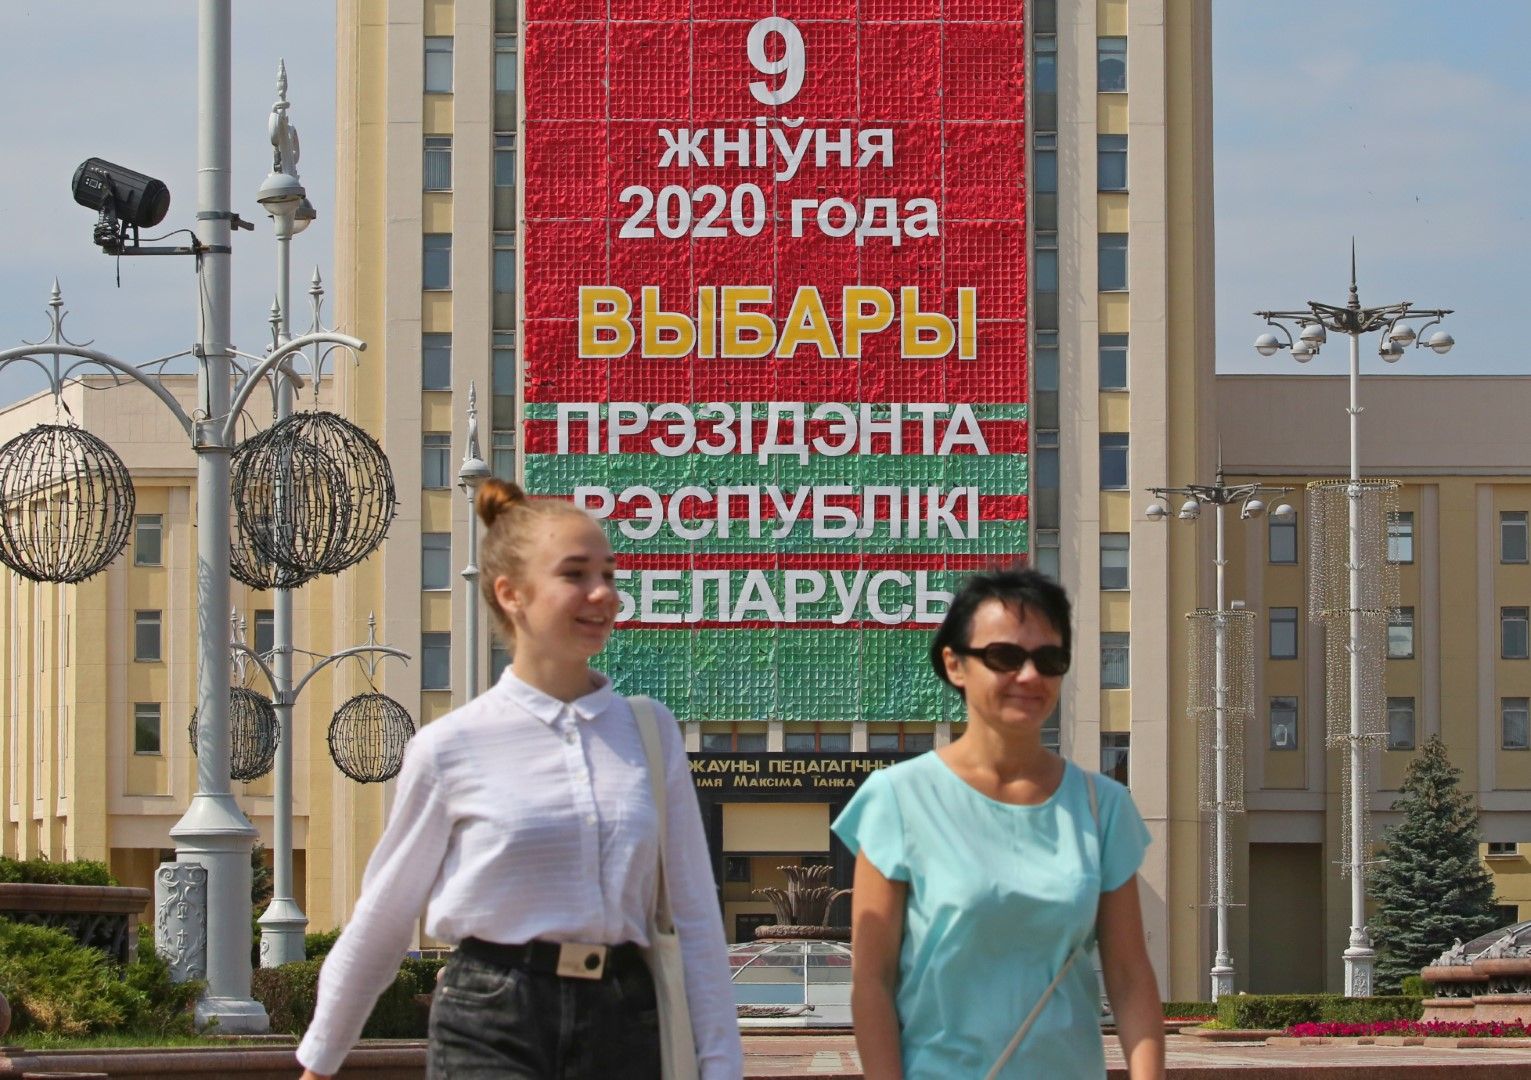 Беларус се готви за президентски избори на 9 август: две жени преминават под предизборен билборд в Минск